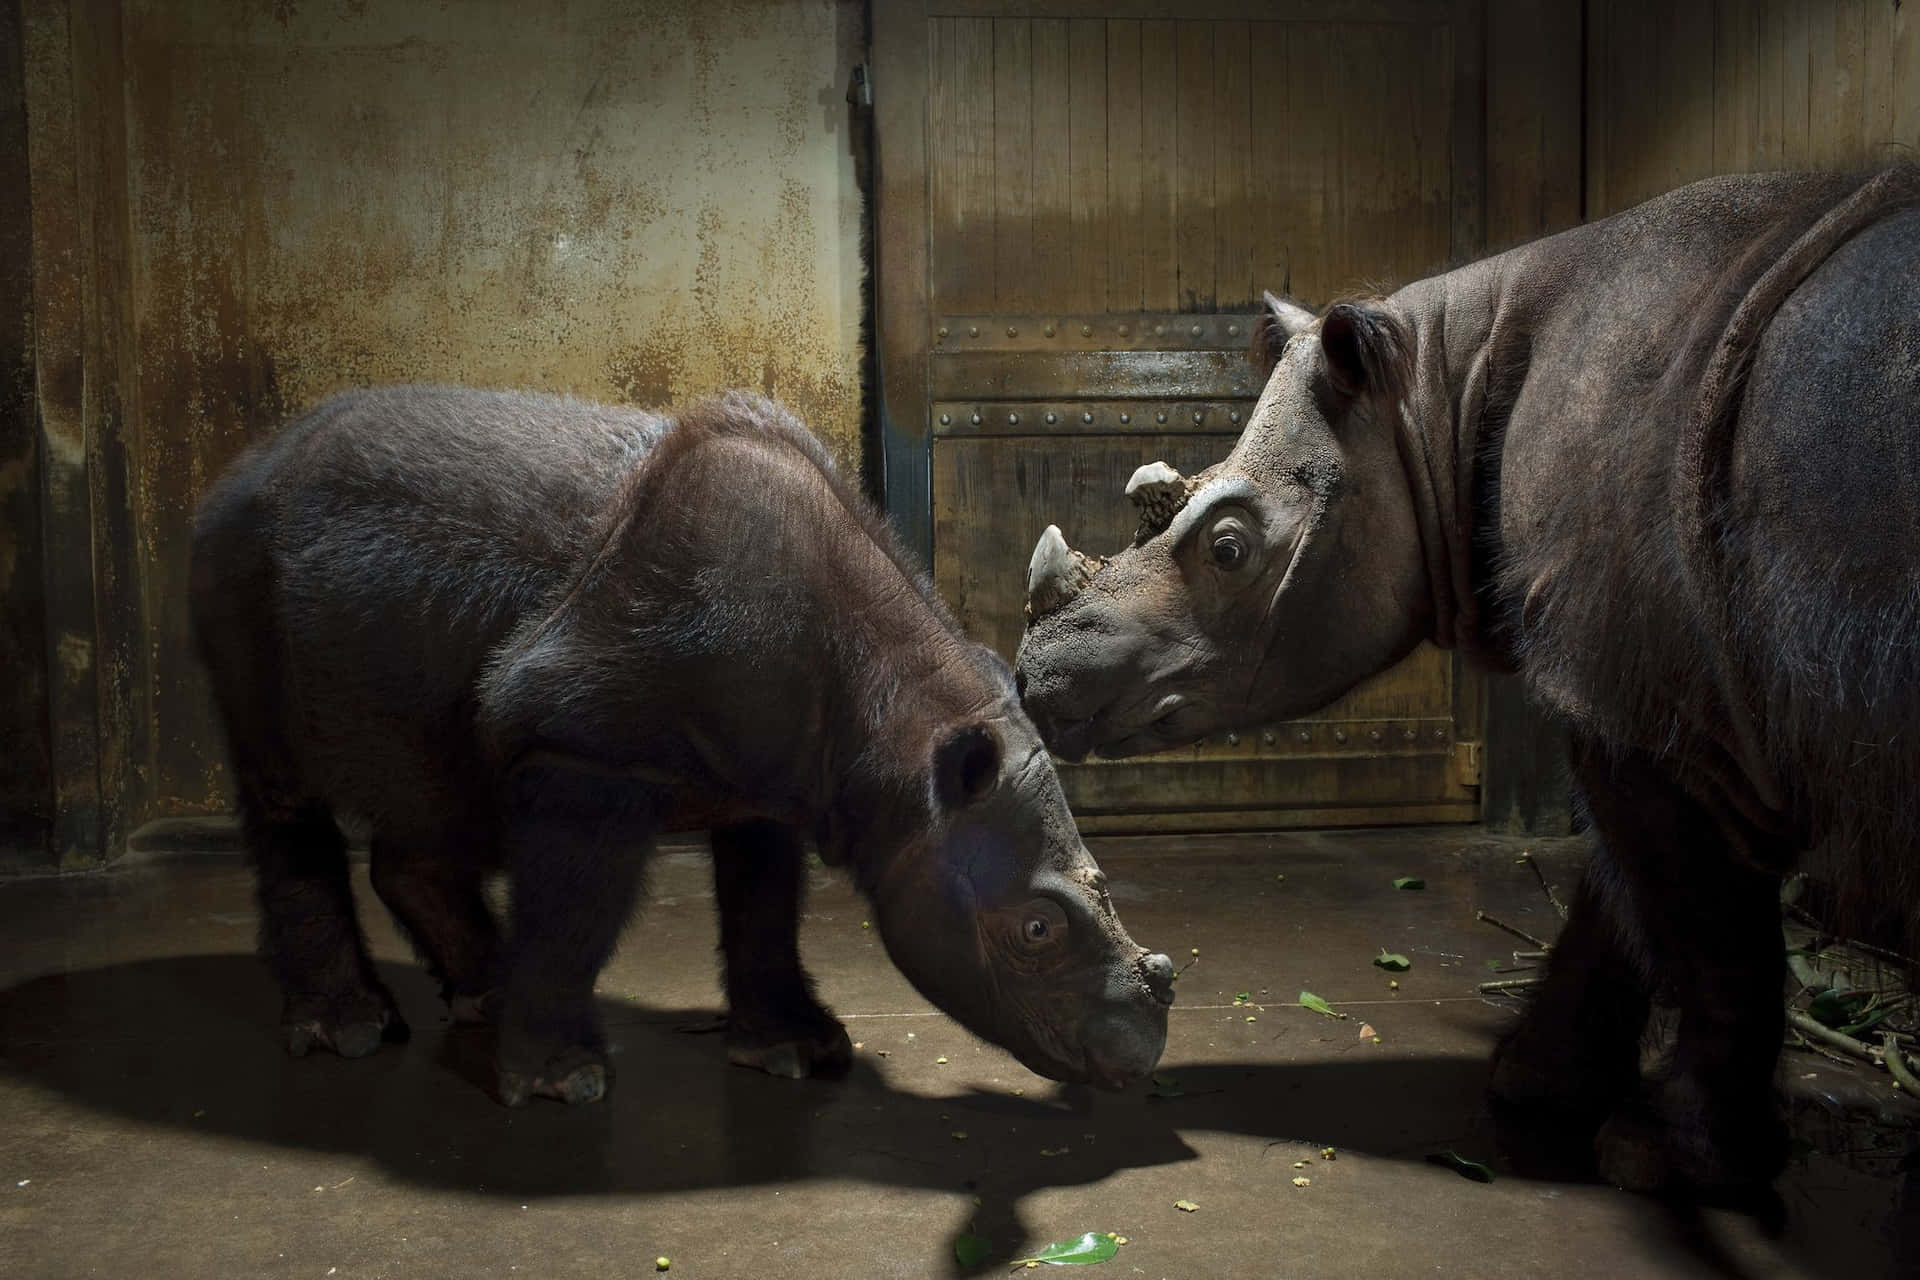 A rhinoceros taking a dust bath in the wild